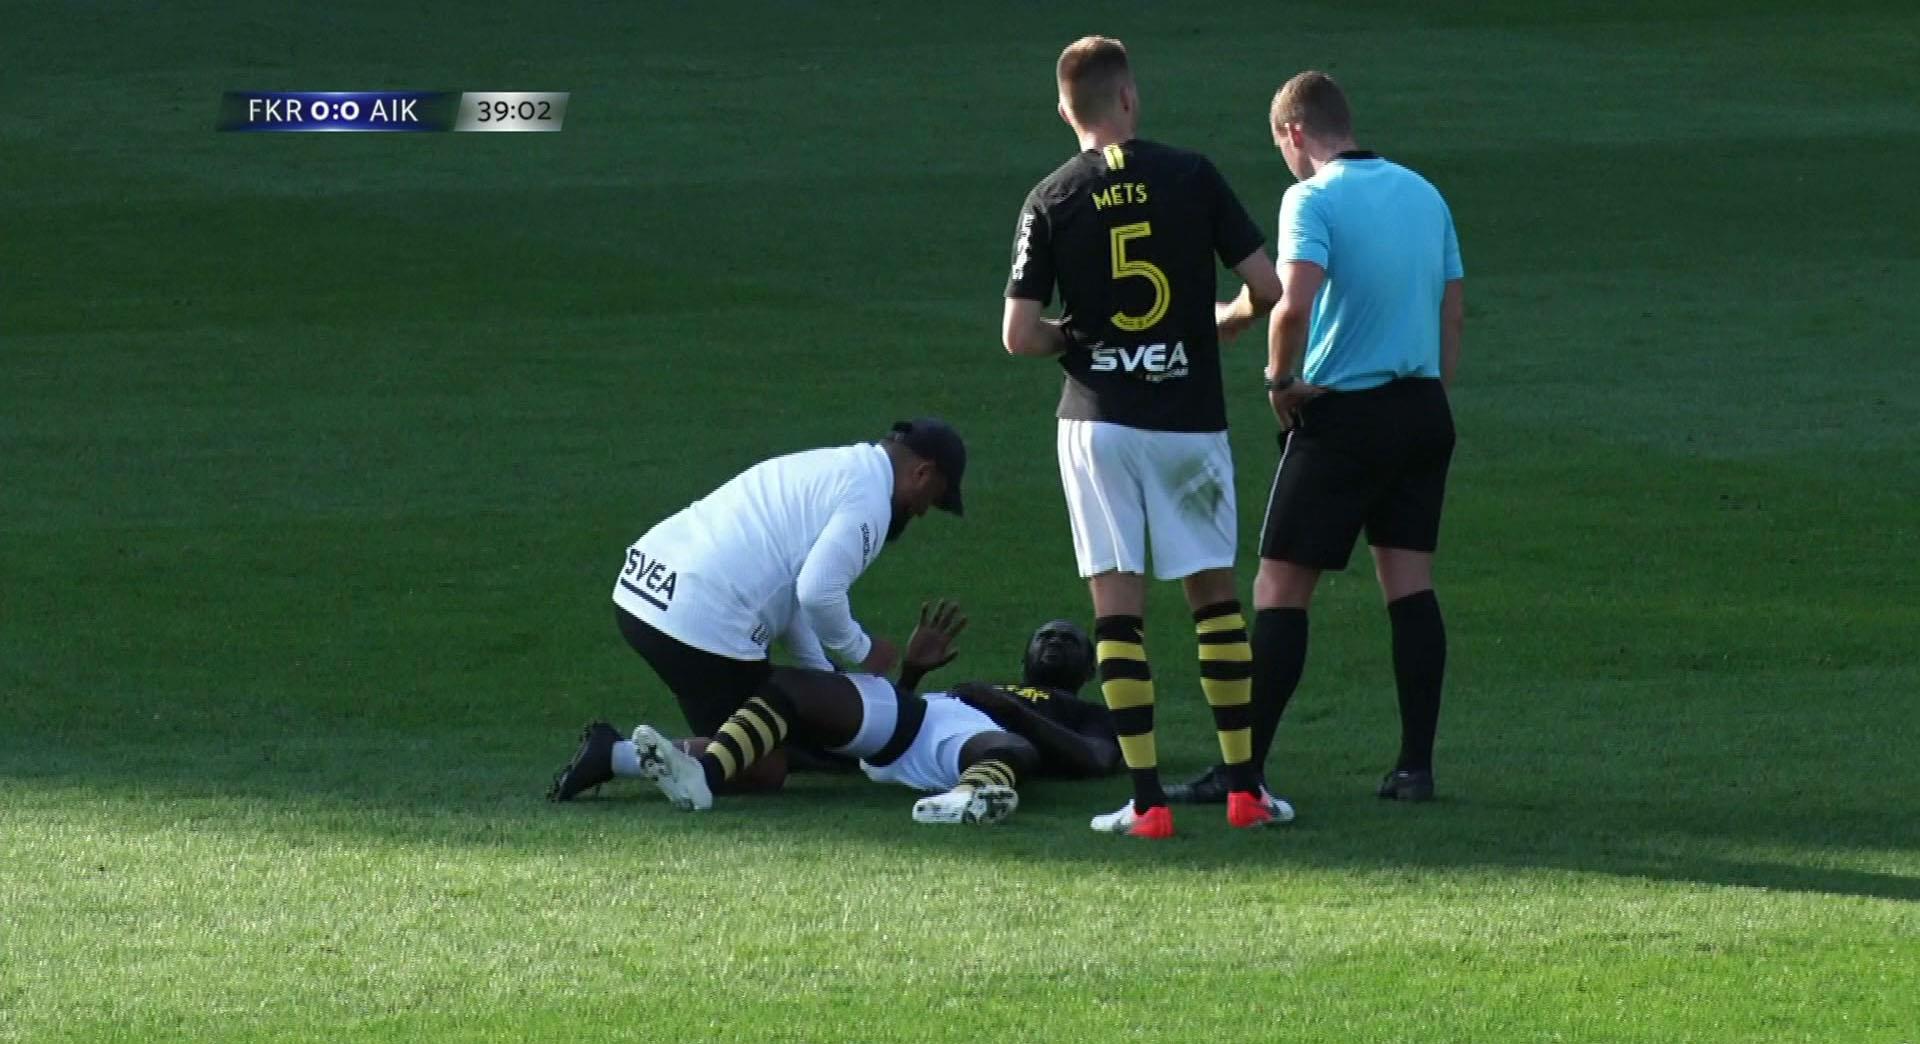 AIK Fotboll: TV: Här byts Adu ut med känning: ”Blir rejält lindad”